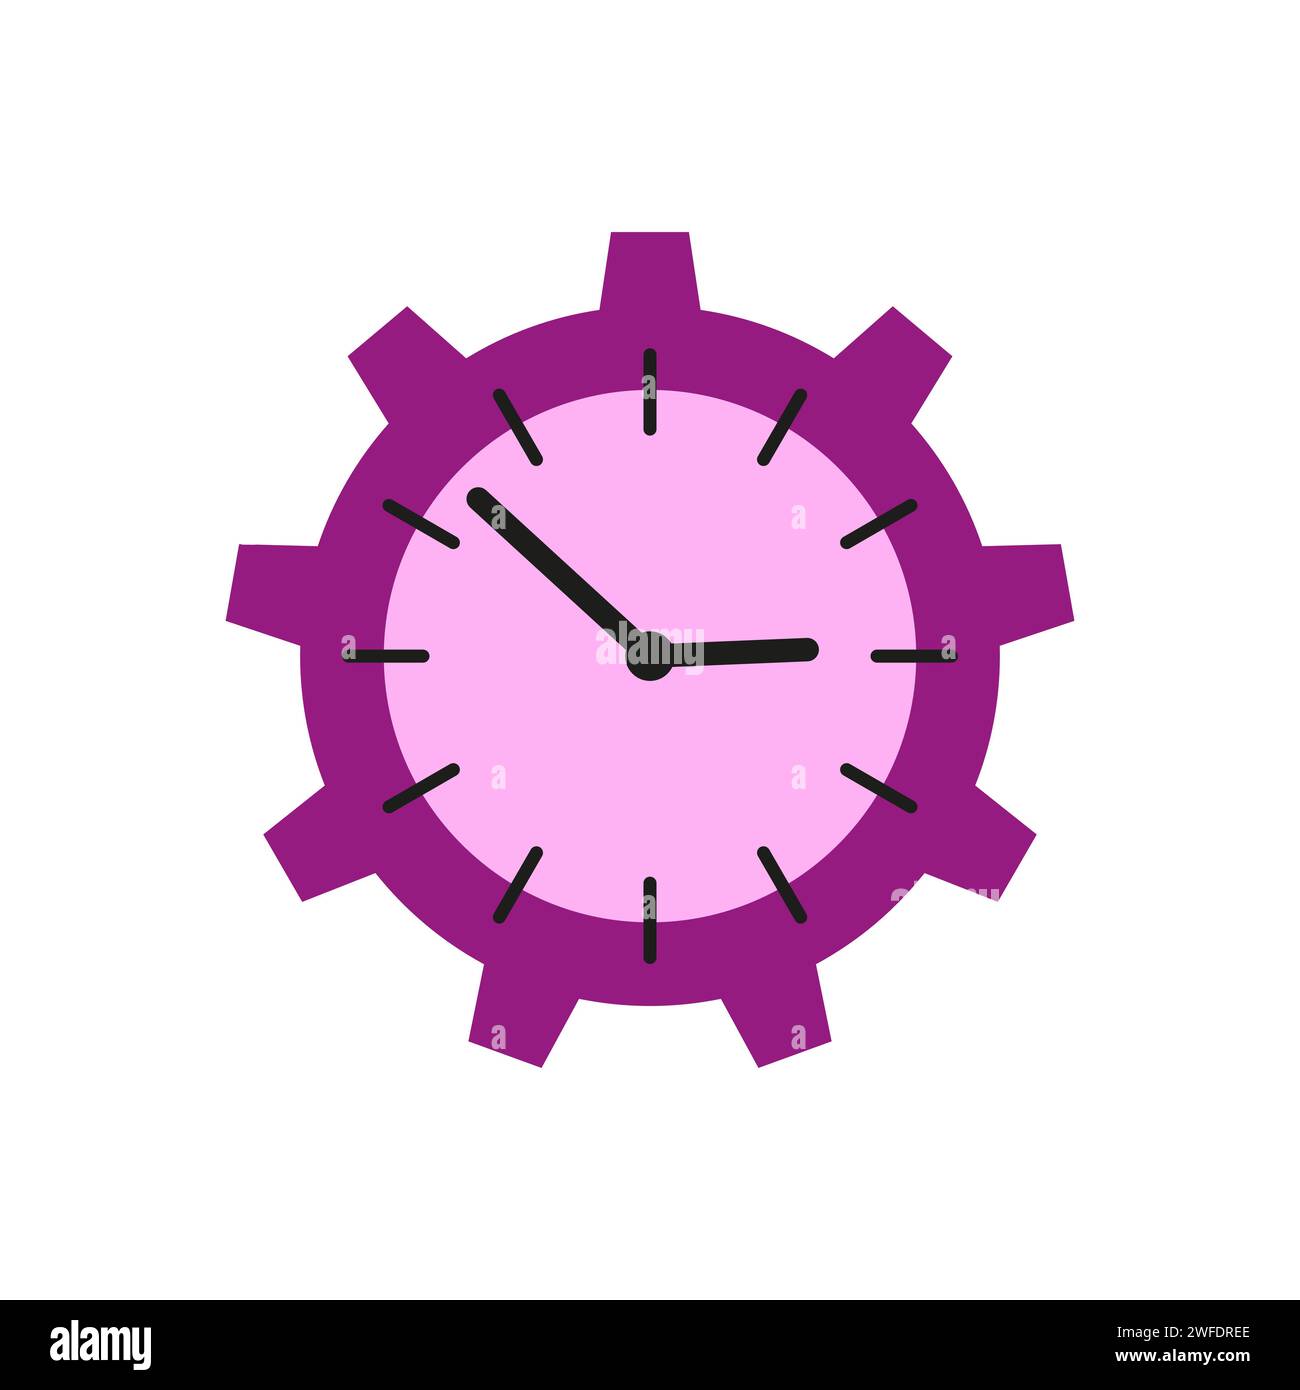 Timer, orologio, orologio, cronometro, simbolo della sveglia. Illustrazione vettoriale. EPS 10. Immagine stock. Illustrazione Vettoriale